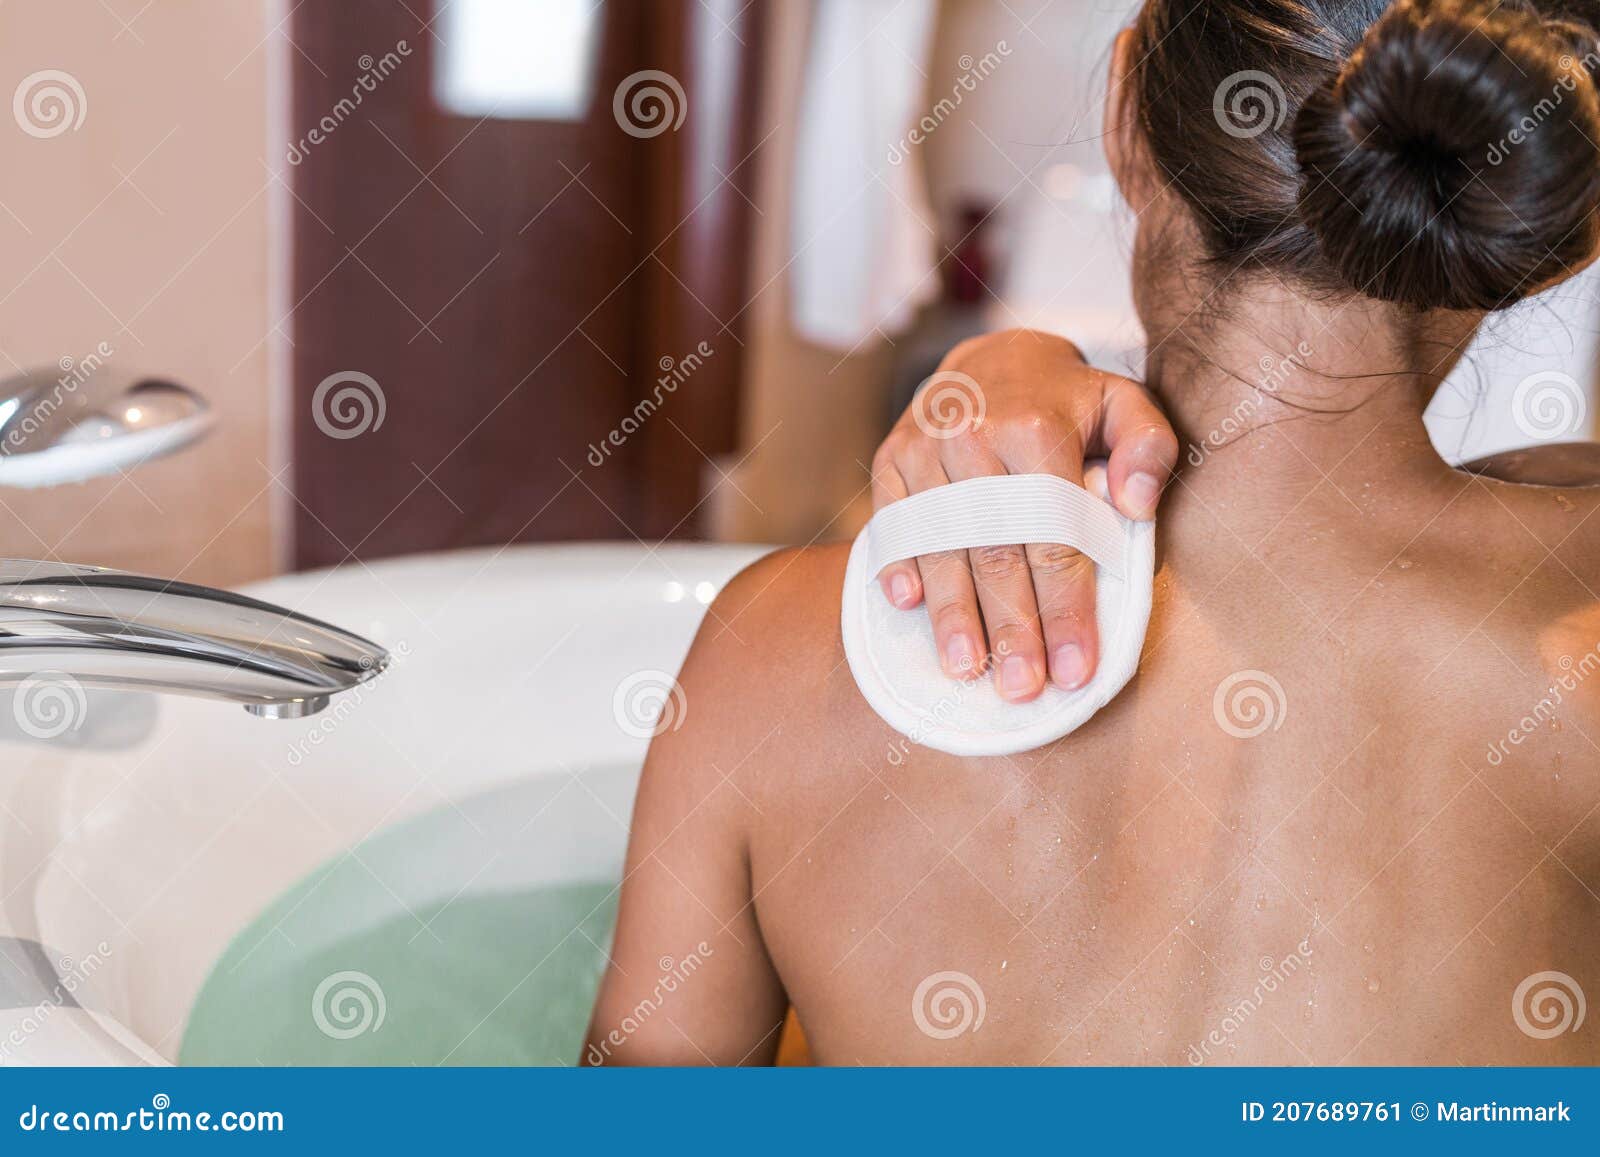 Generic 2 x Eponge de bain pour éliminer la peau morte, Eponge